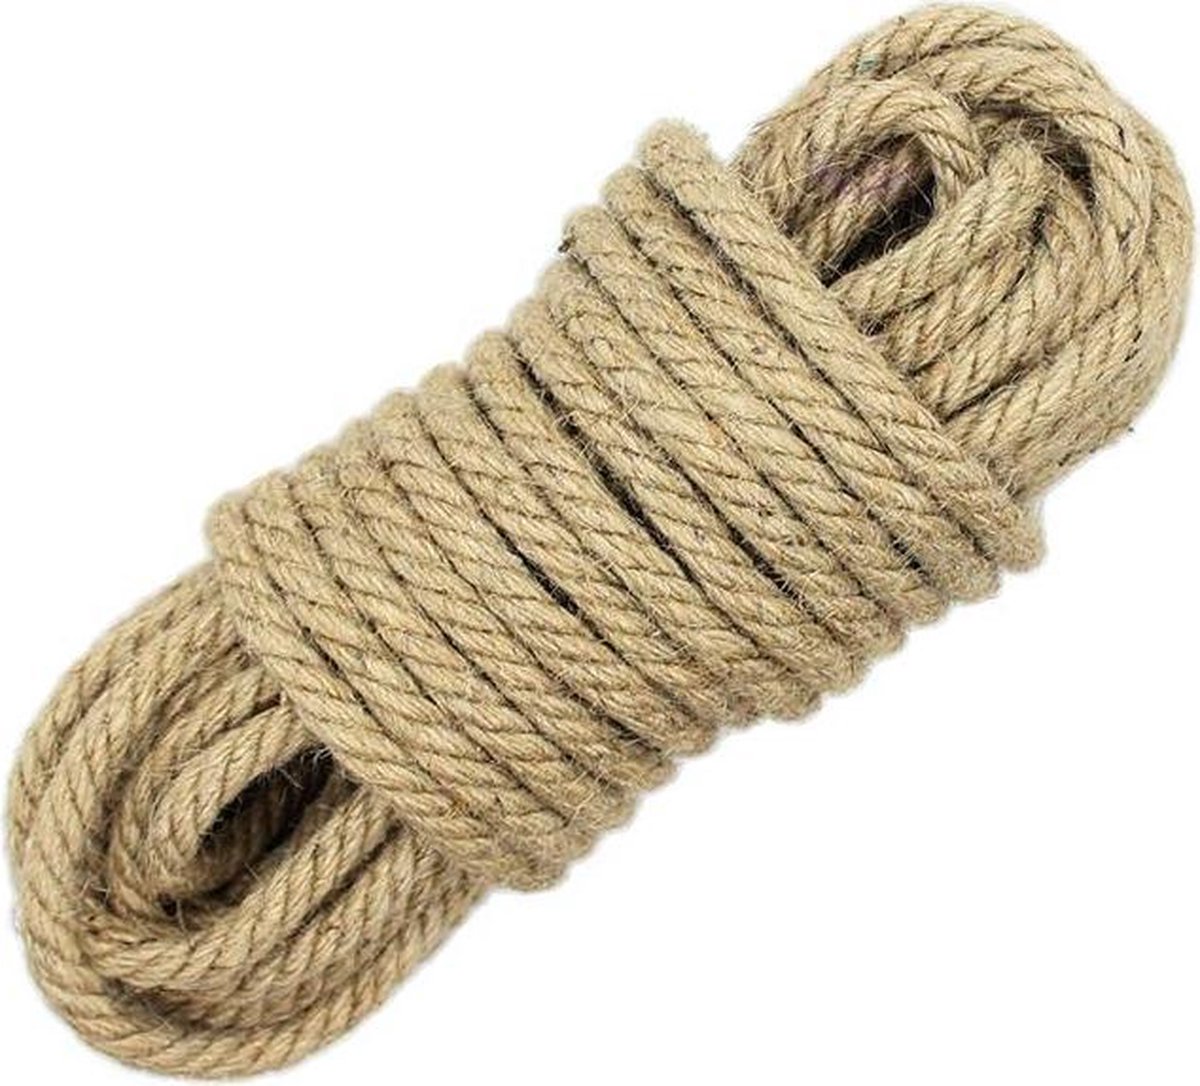 Hennep bondage touw - 10 meter